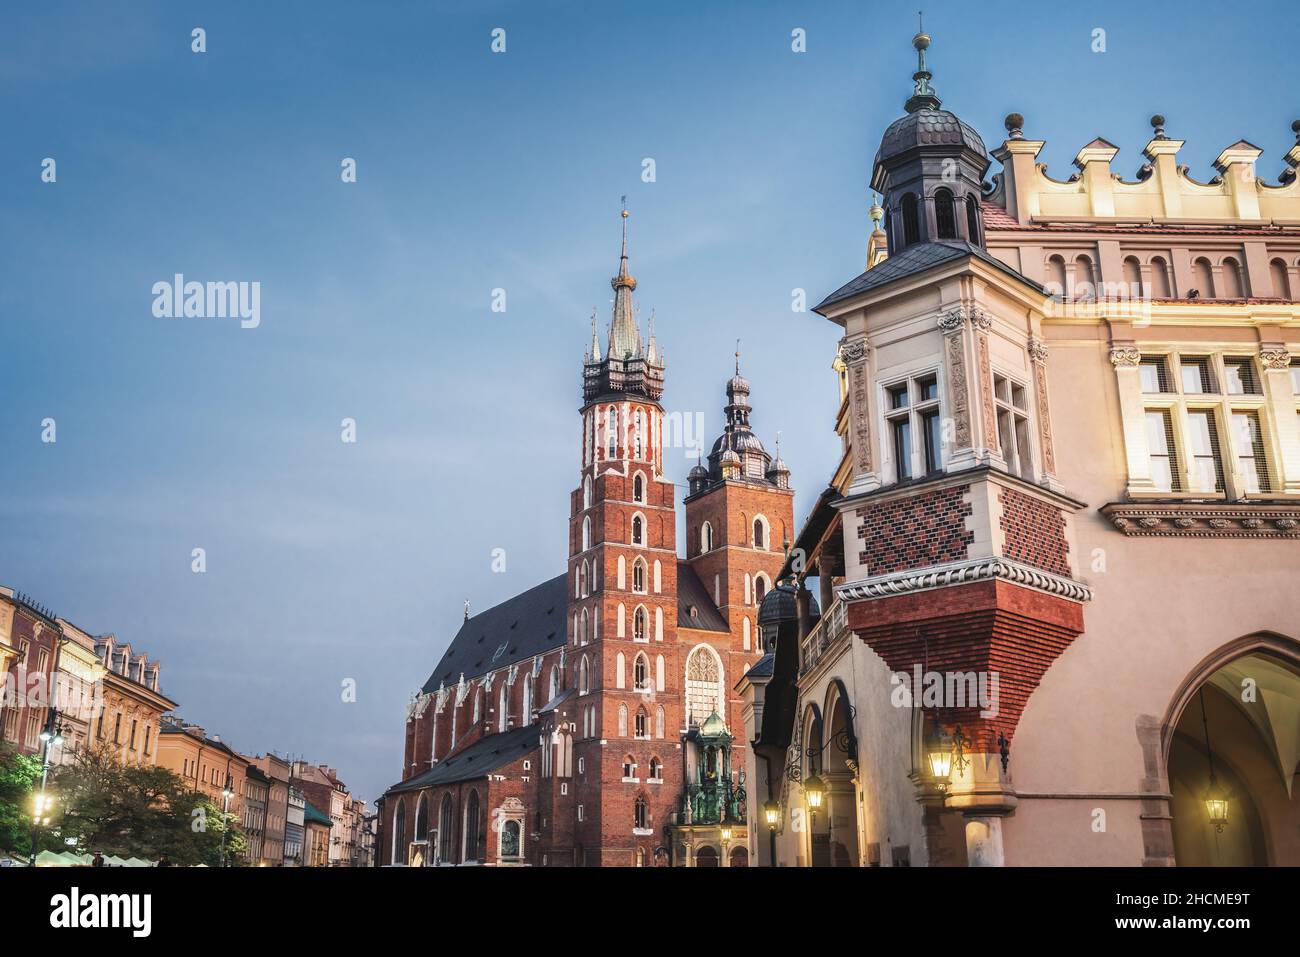 St. Mary's Basilica and Cloth Hall at Main Market Square - Krakow, Poland Stock Photo